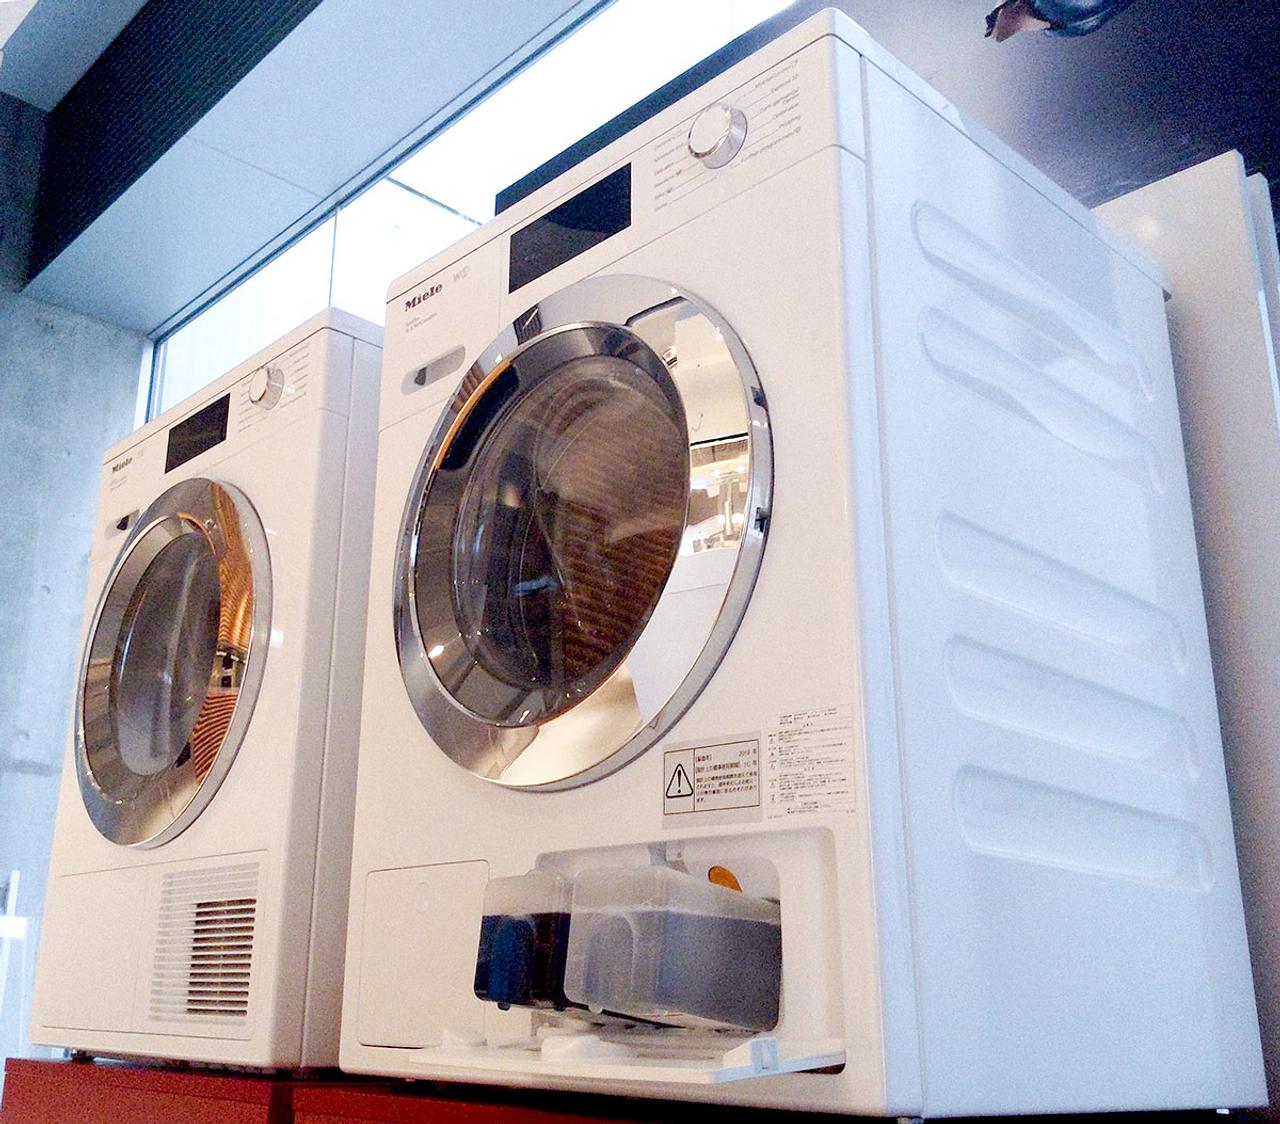 洗濯物を絶対殺菌するマシン。ミーレの洗濯機｢W1｣が熱い（物理的に）